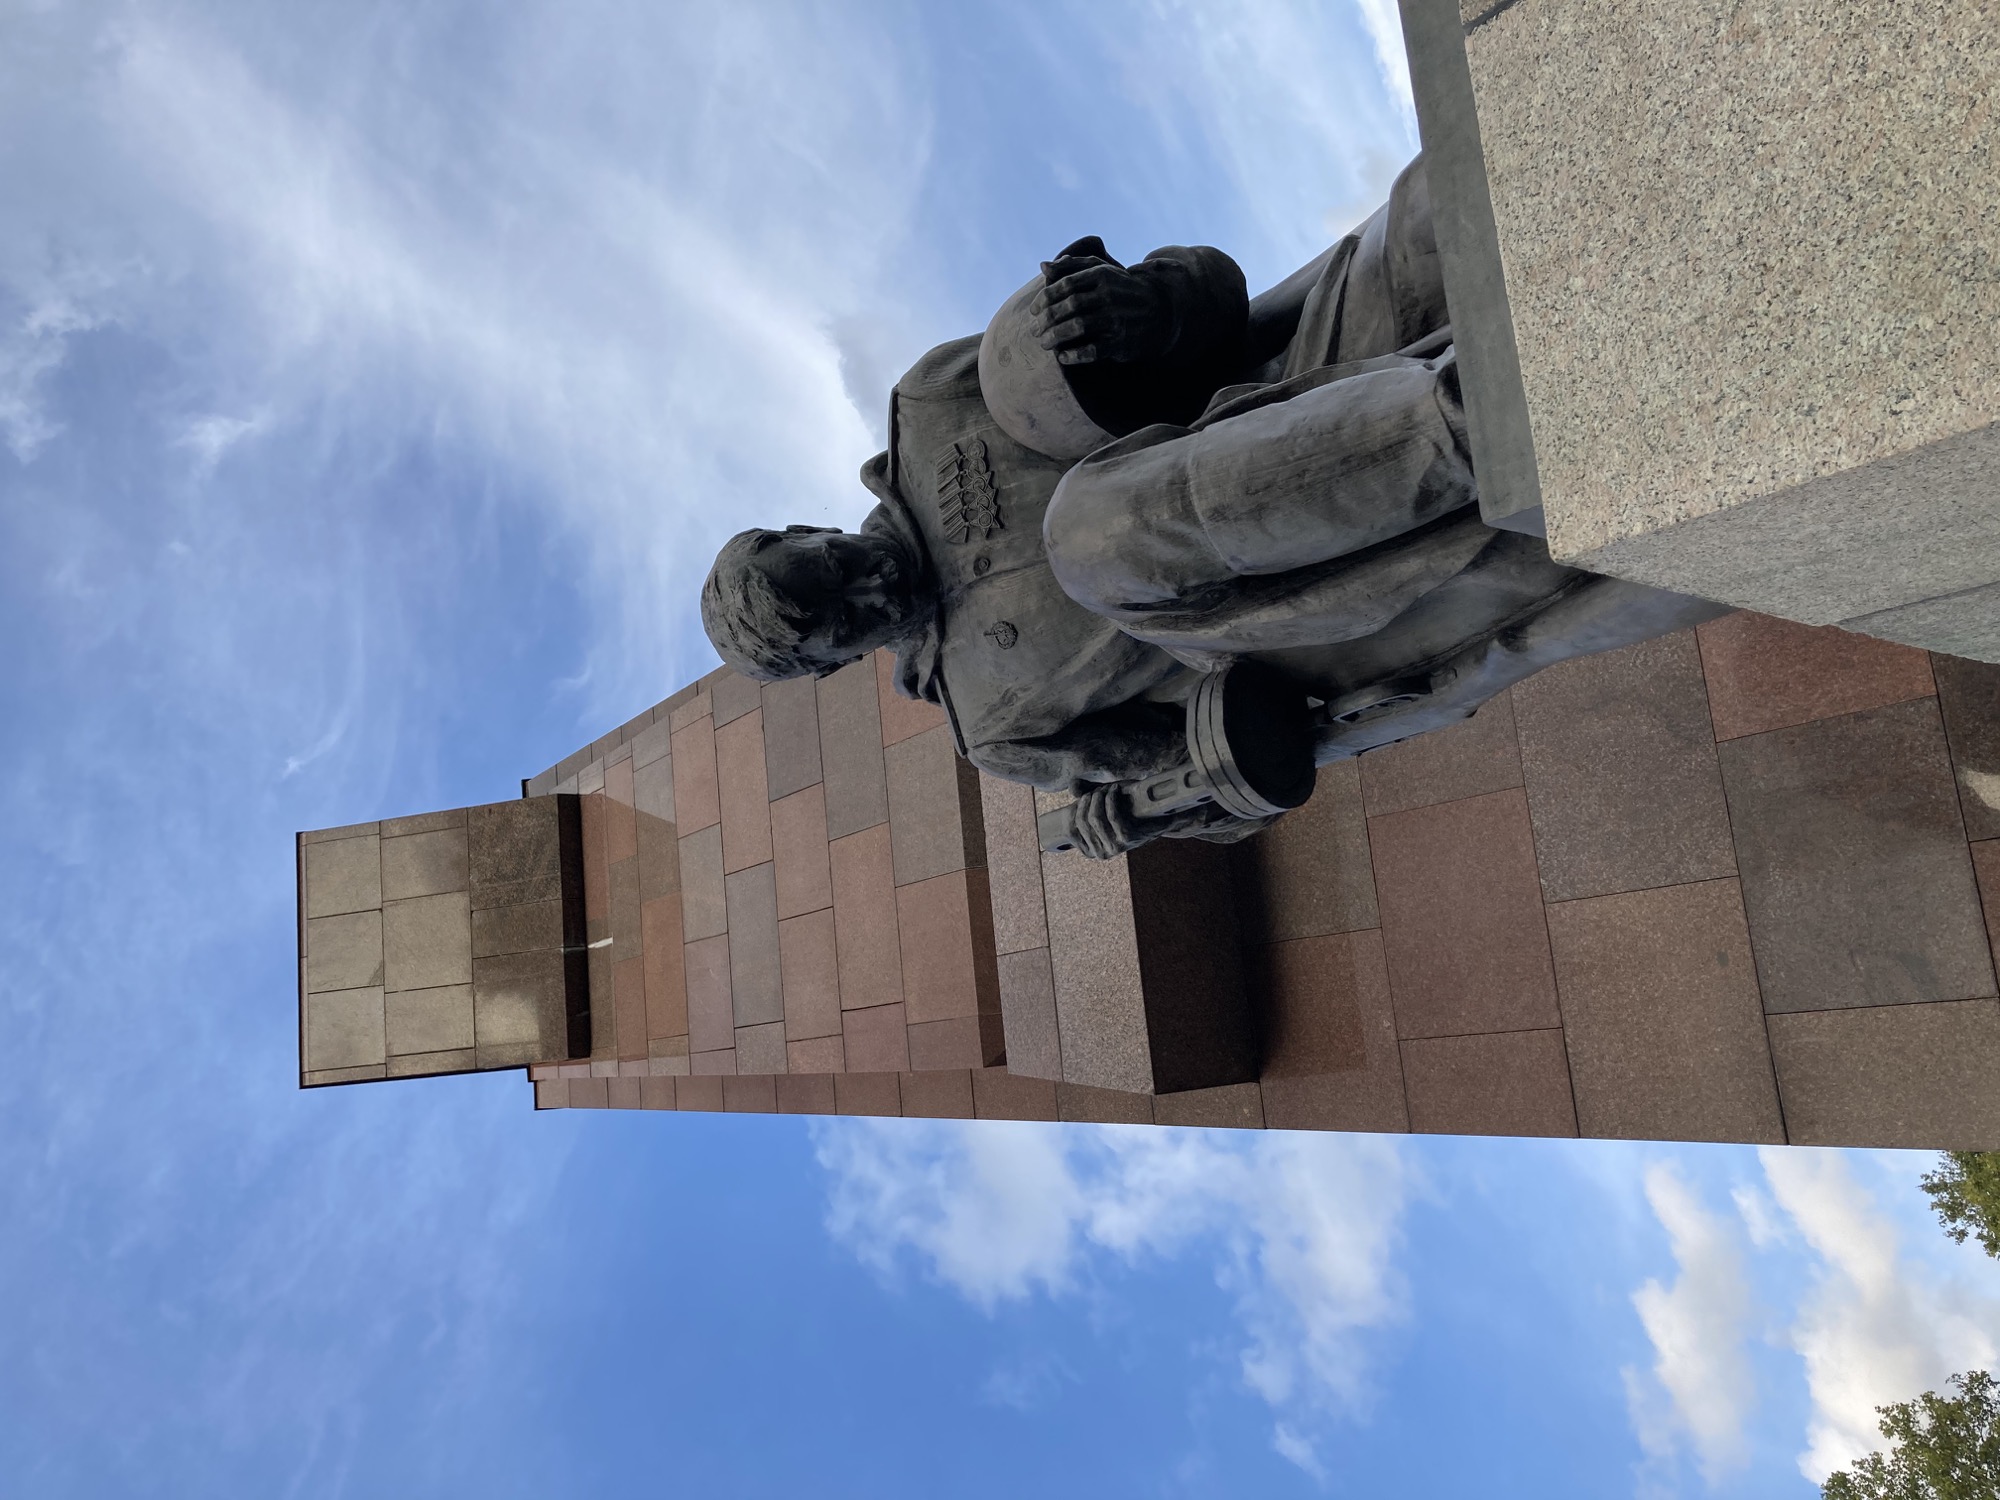 Sowjetisches Ehrenmal: Statue eines demütigen, knienden Soldaten mit Helm in der linken Hand und Maschinenpistole in der rechten Hand, dramatischer Blickwinkel von unten